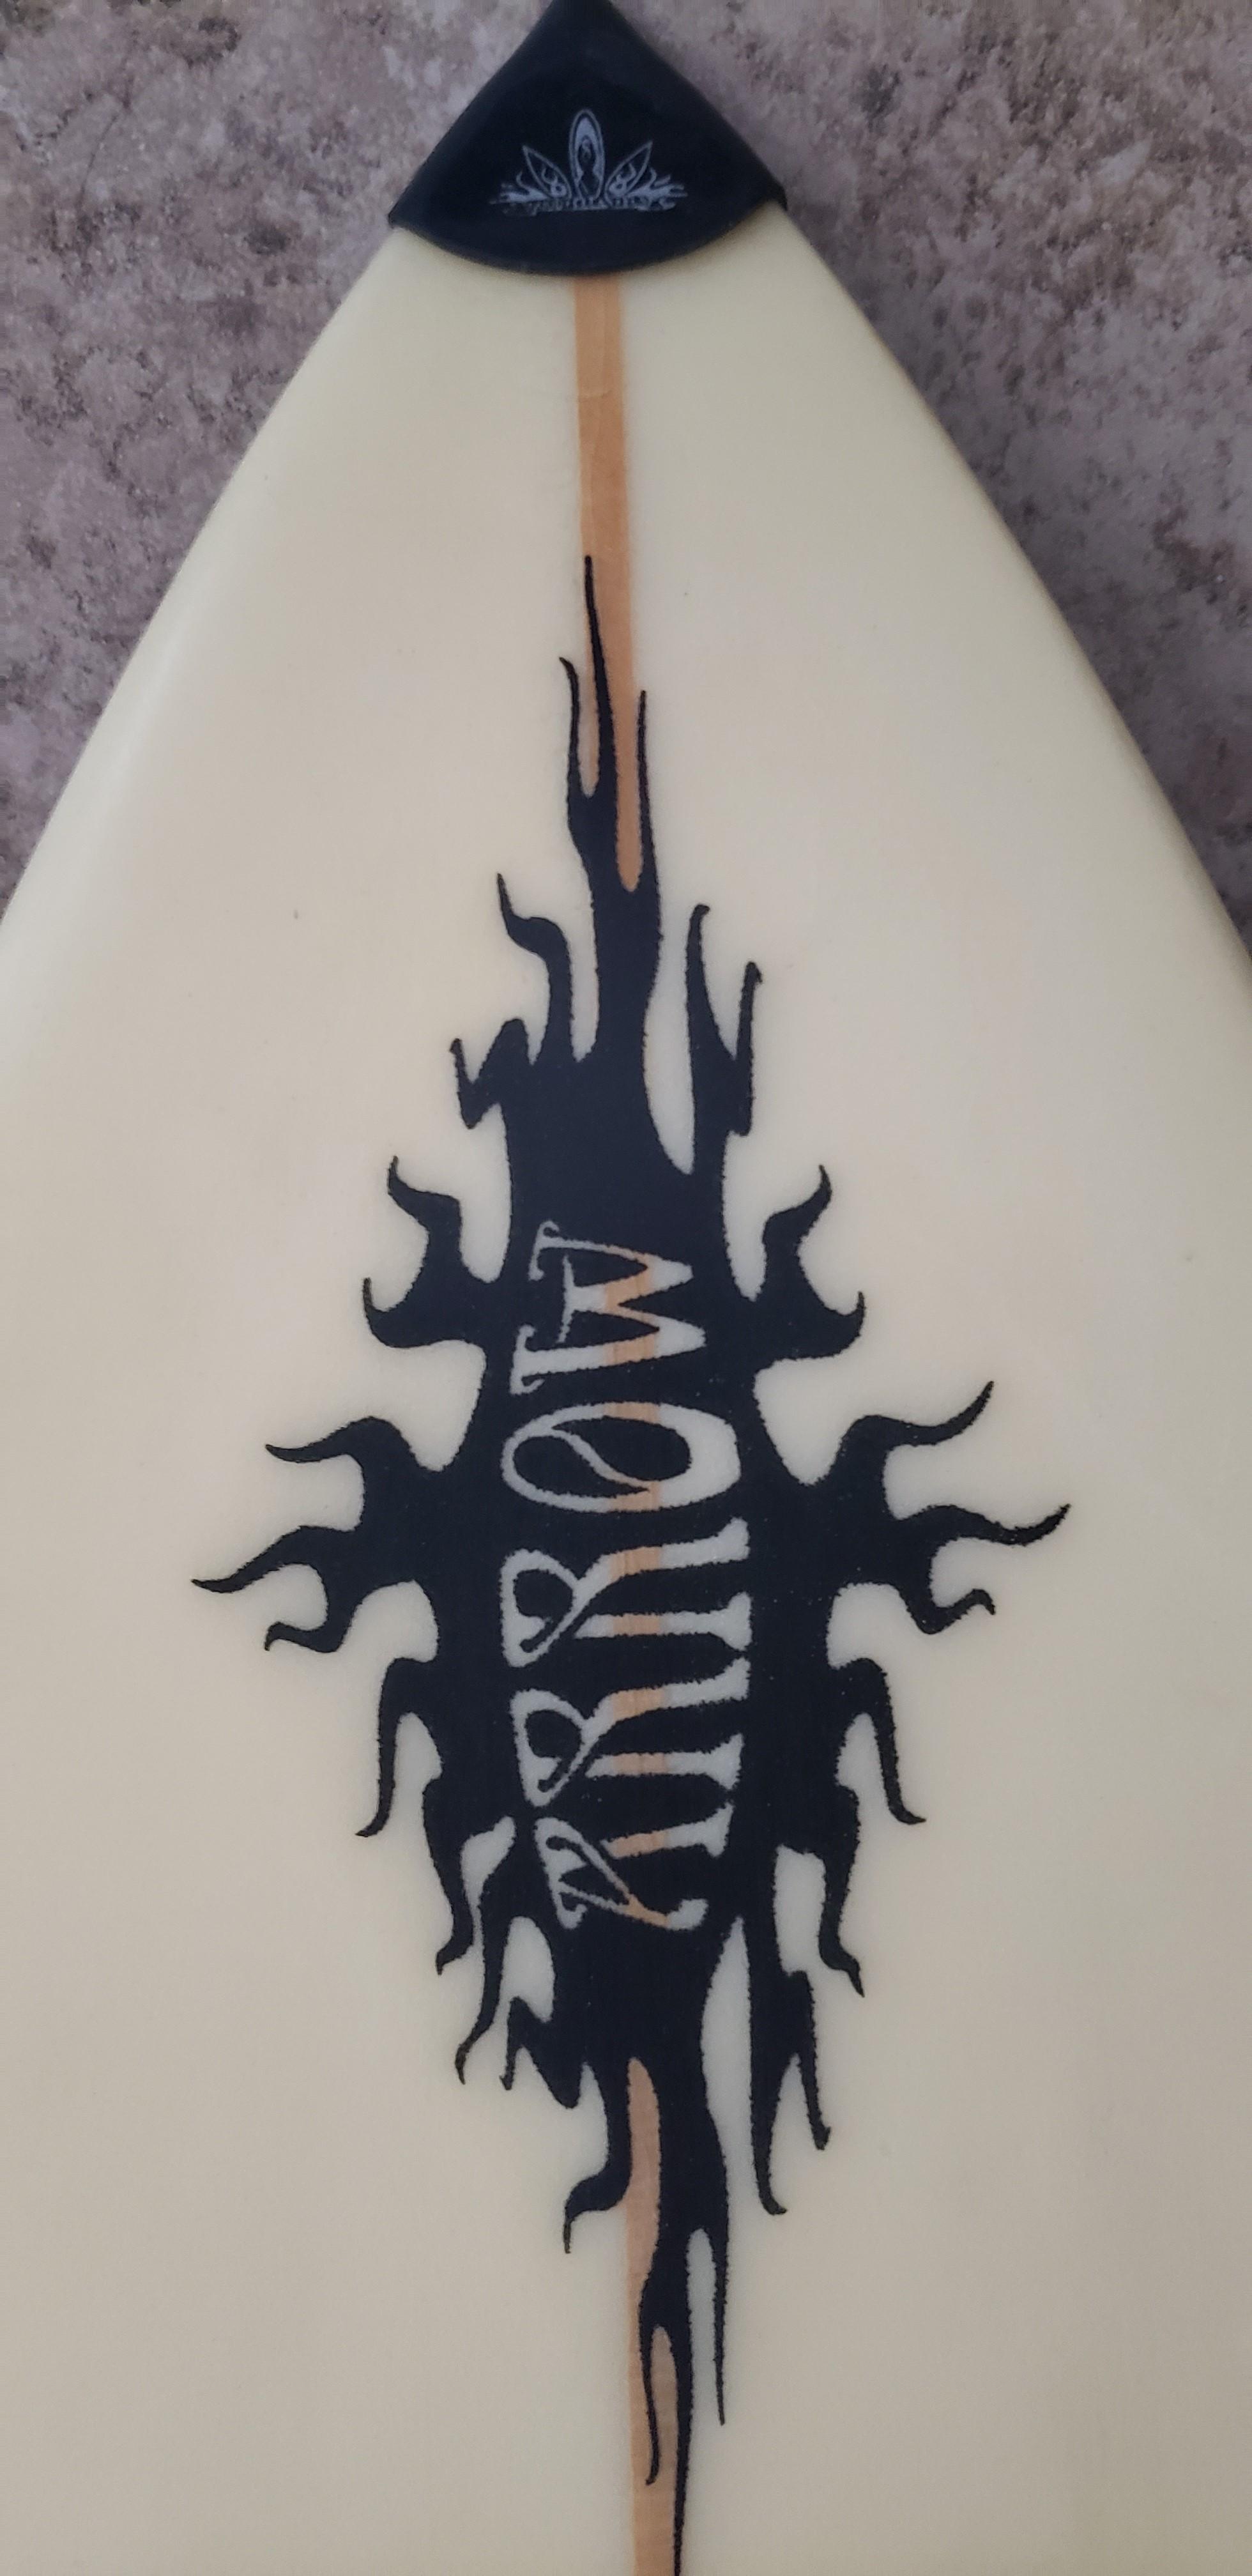 6'4" Surf Board Tri-fin